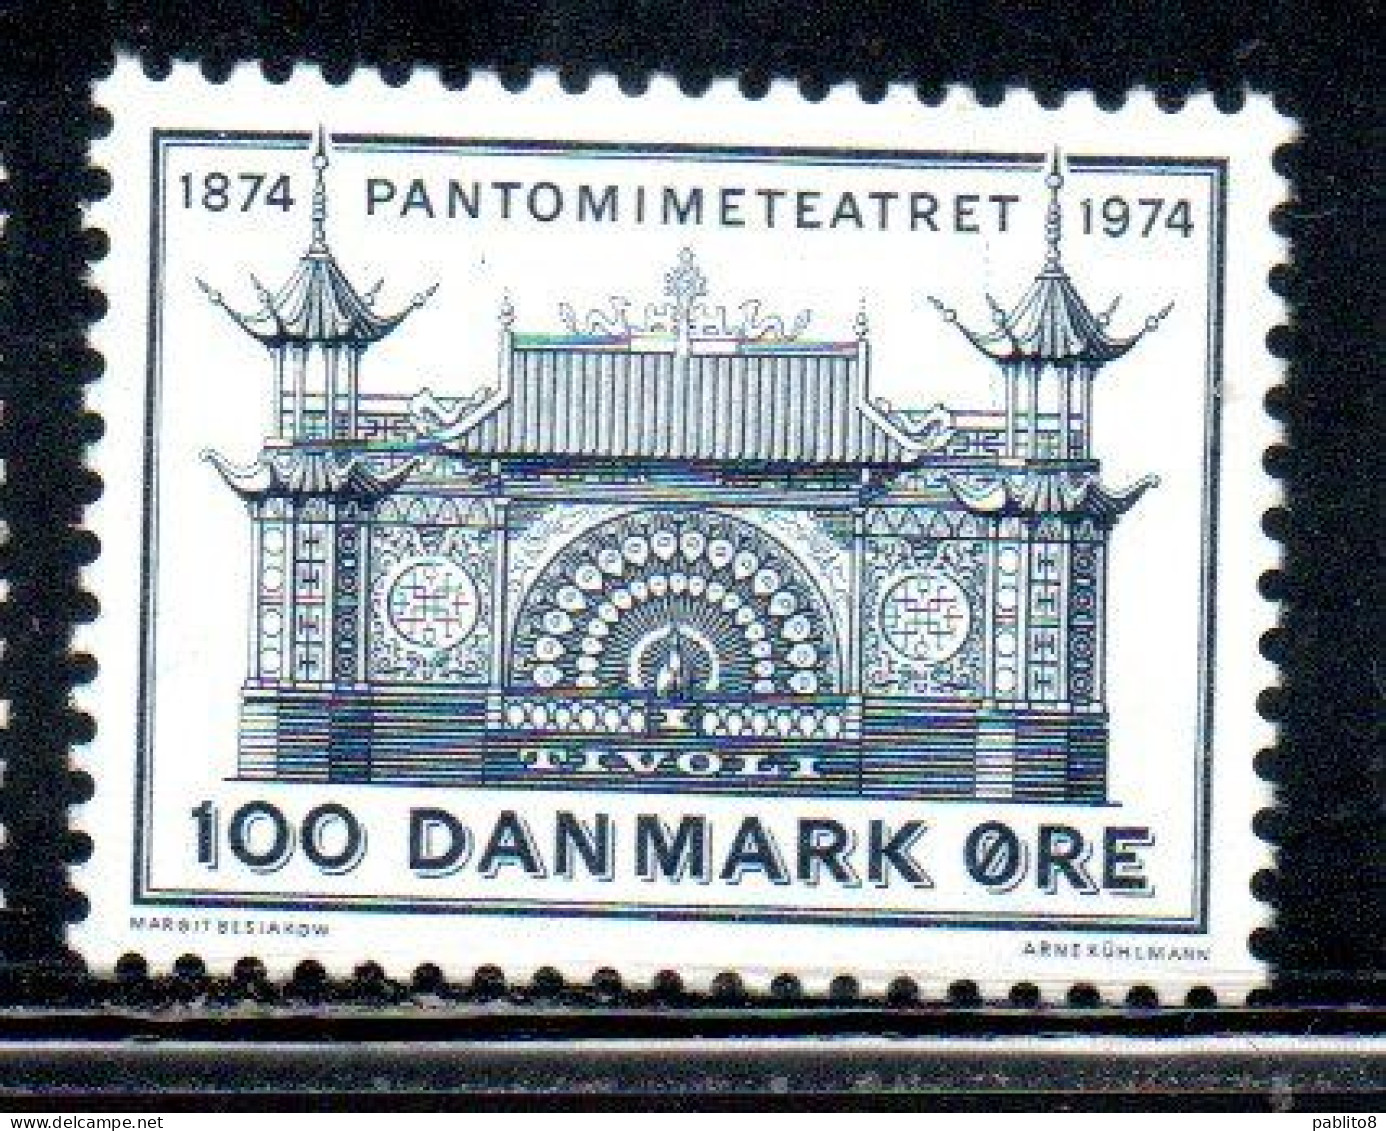 DANEMARK DANMARK DENMARK DANIMARCA 1974 PANTOMIME TEATHER TIVOLI 100o MNH - Nuovi